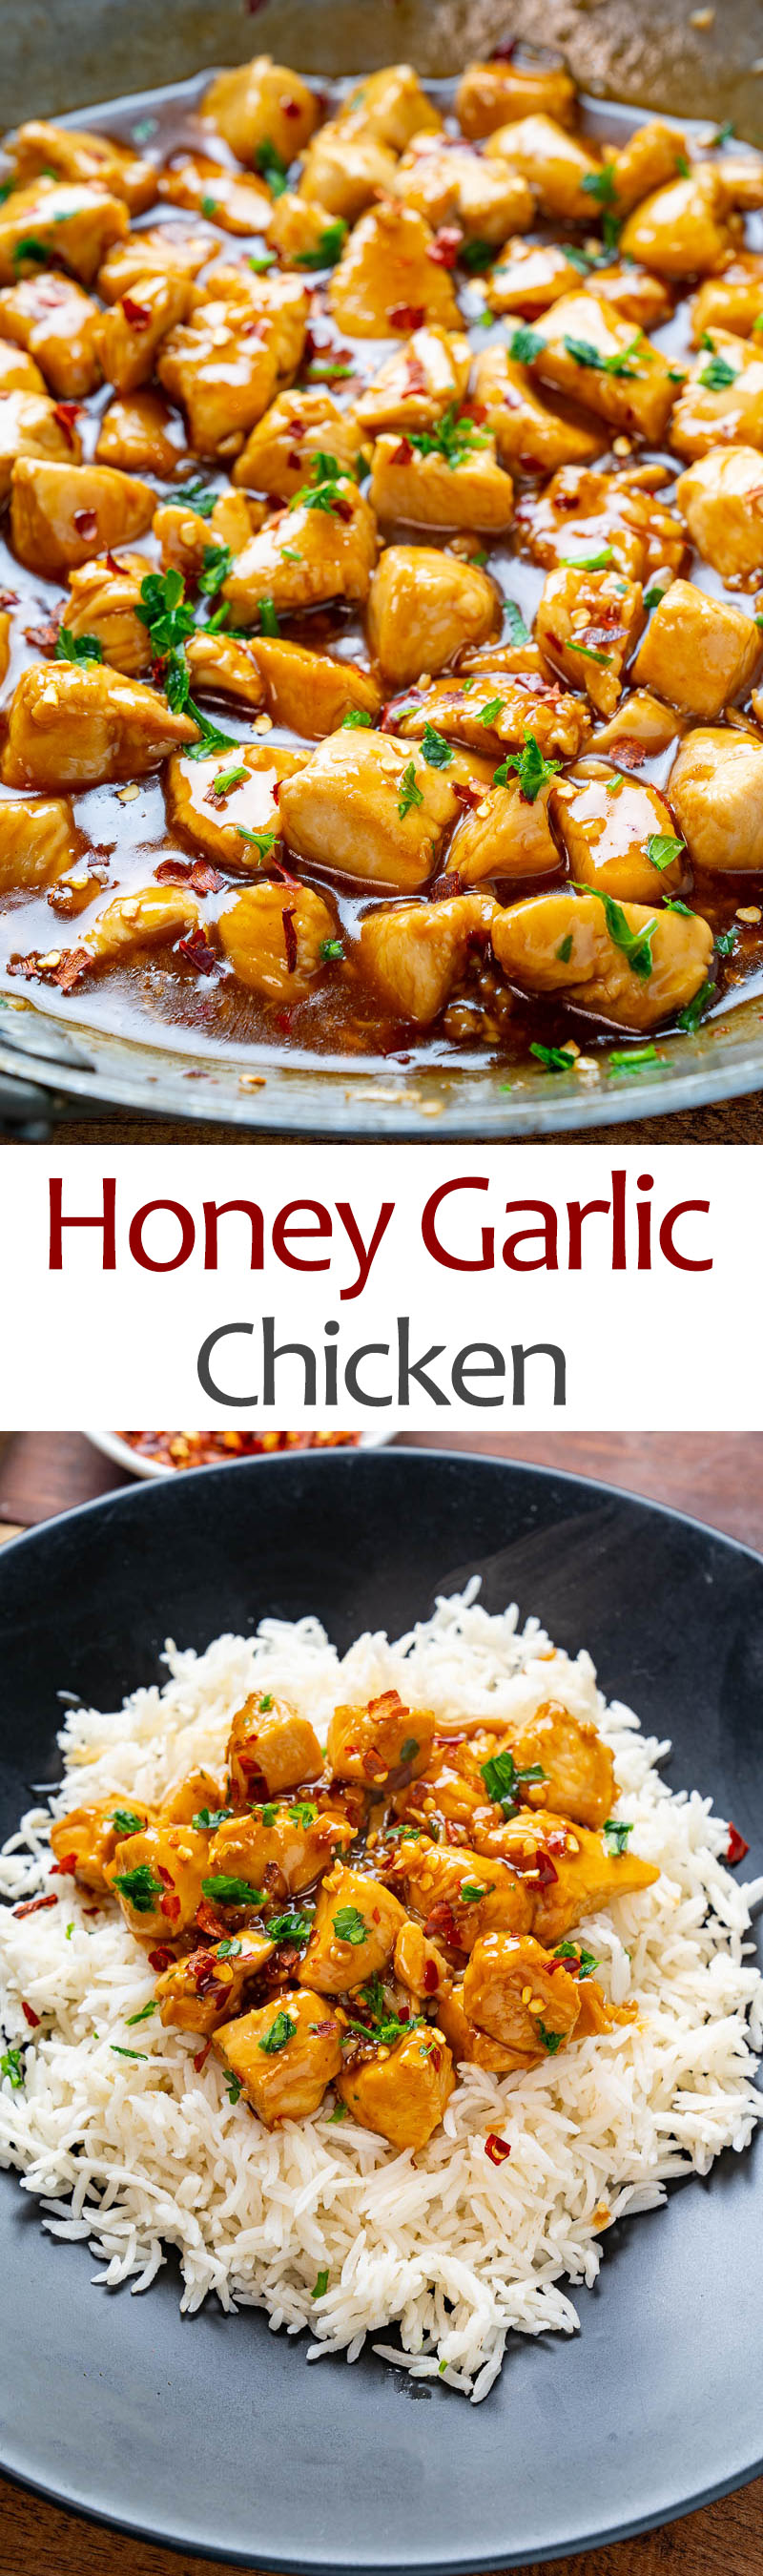 20 Minute Light Honey Garlic Chicken